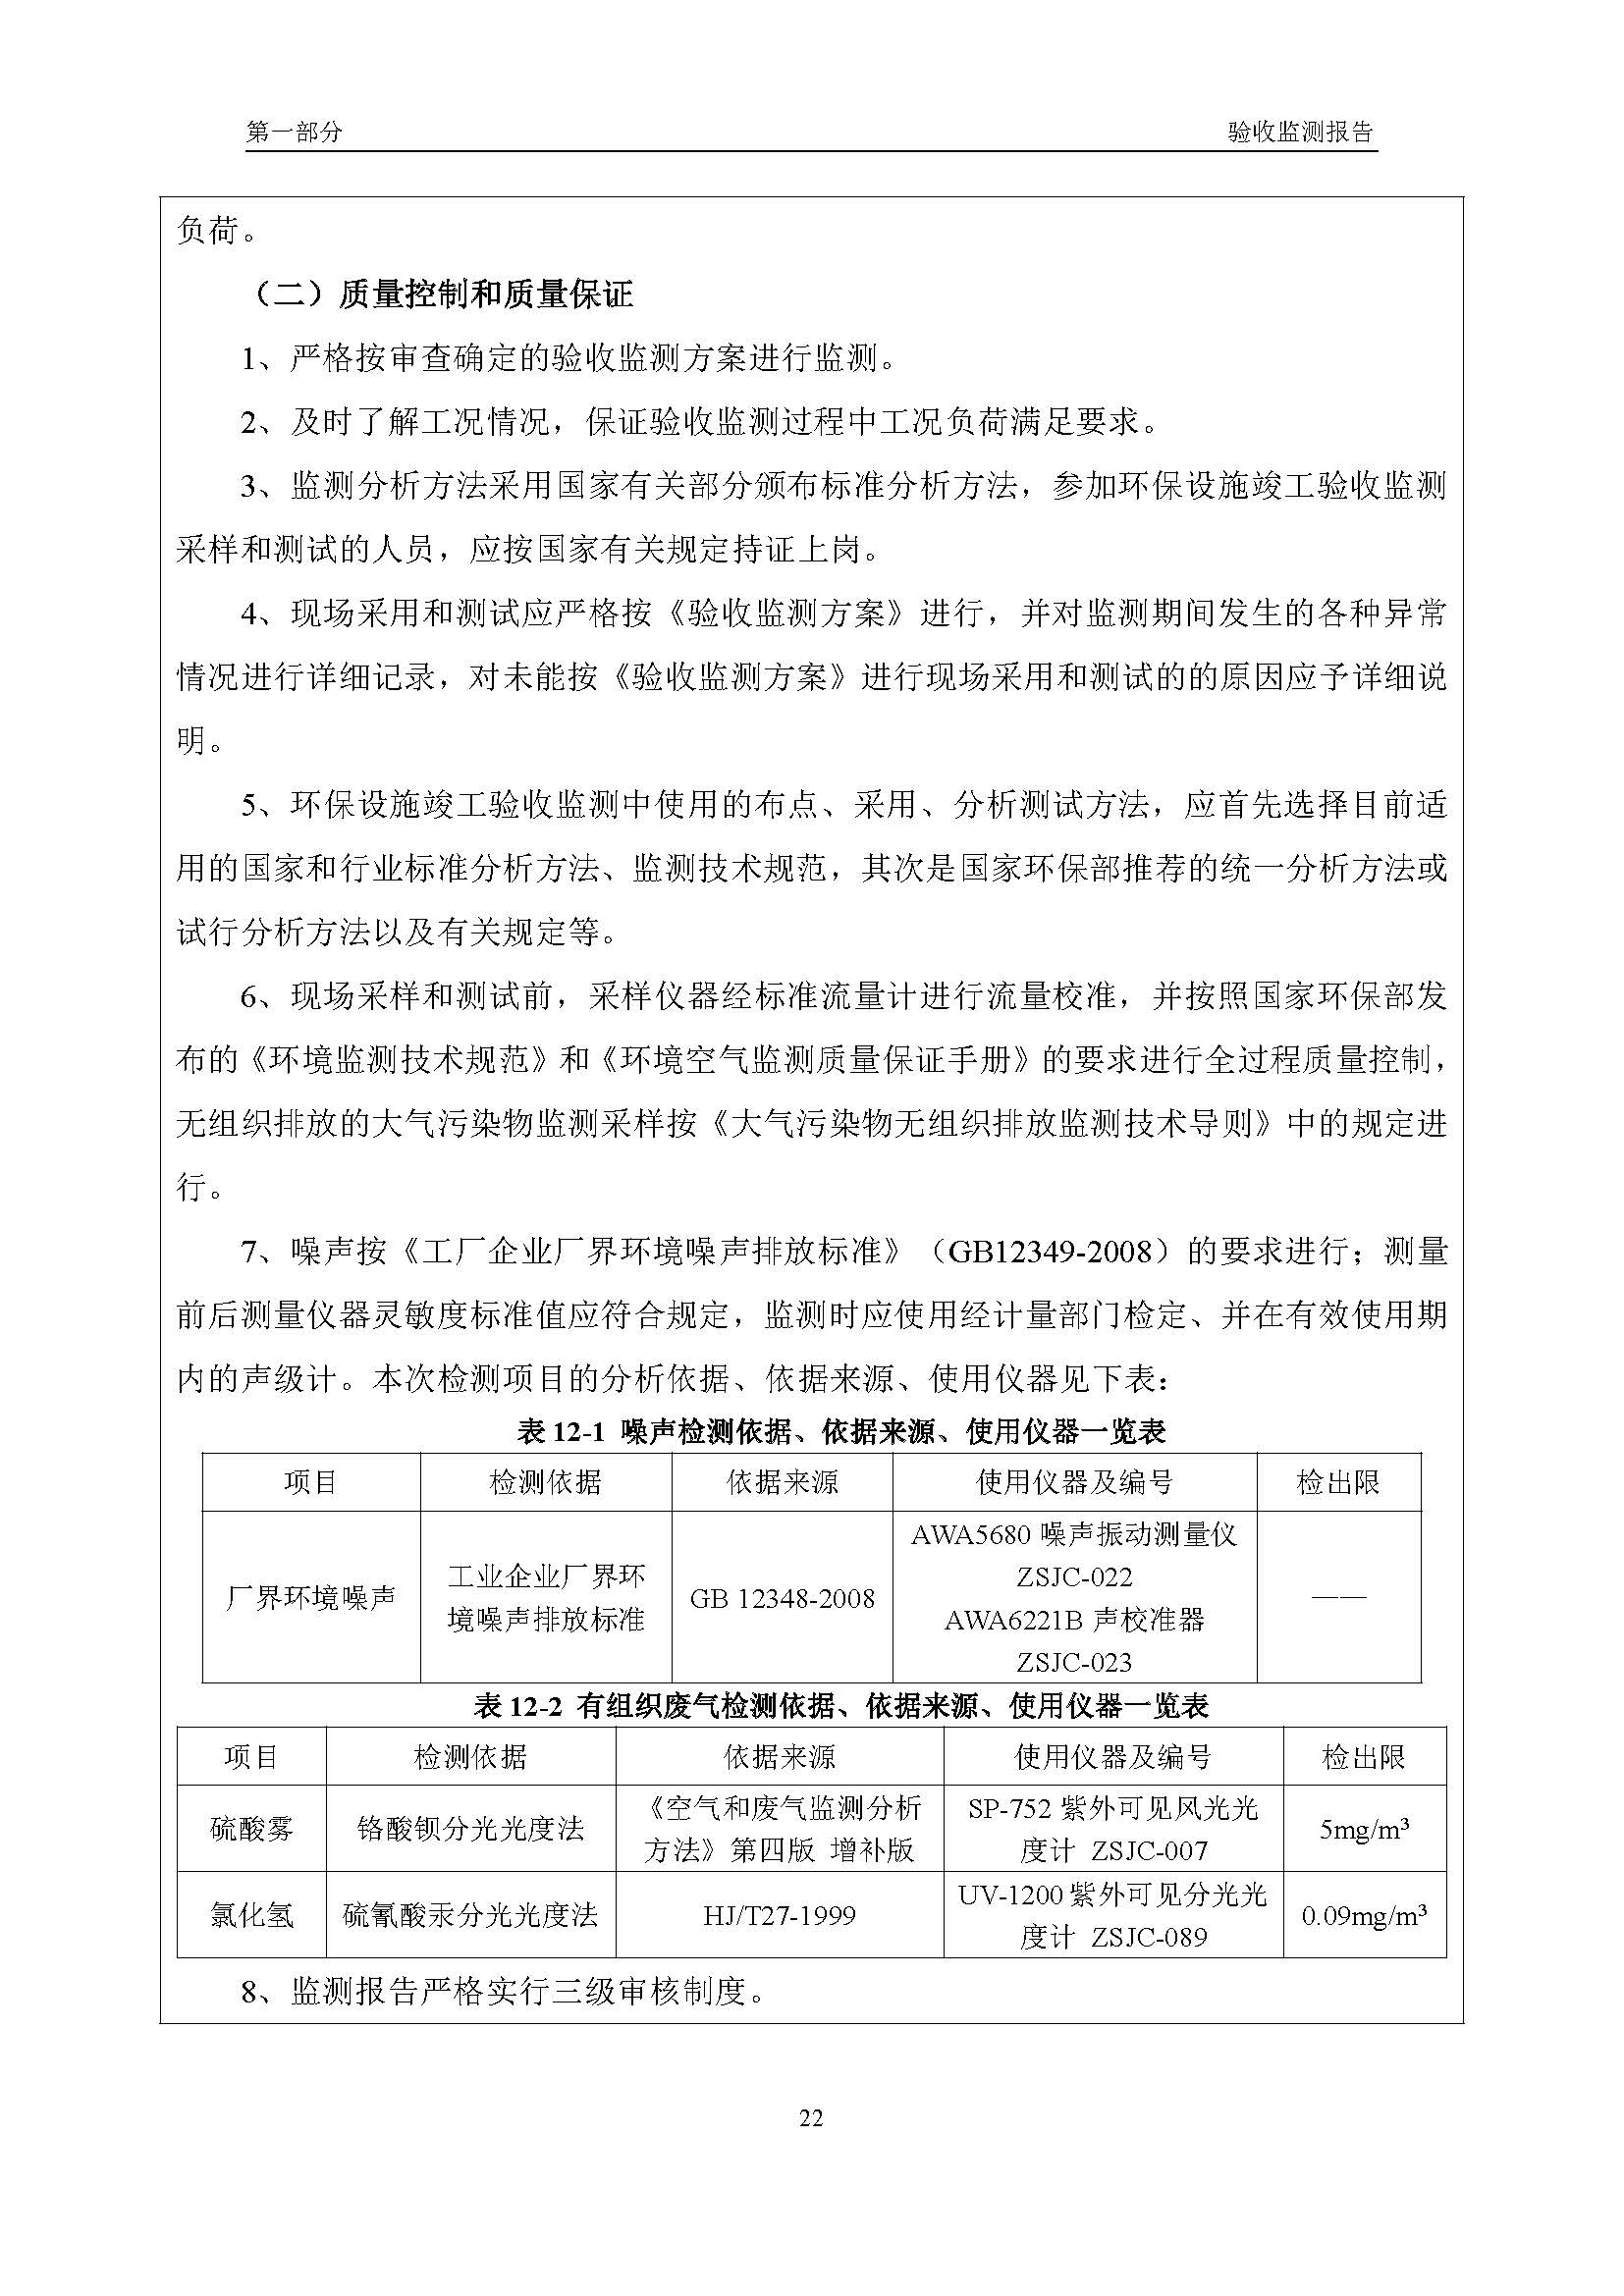 汉正检测环评验收报告 2018.05.31_页面_24.jpg